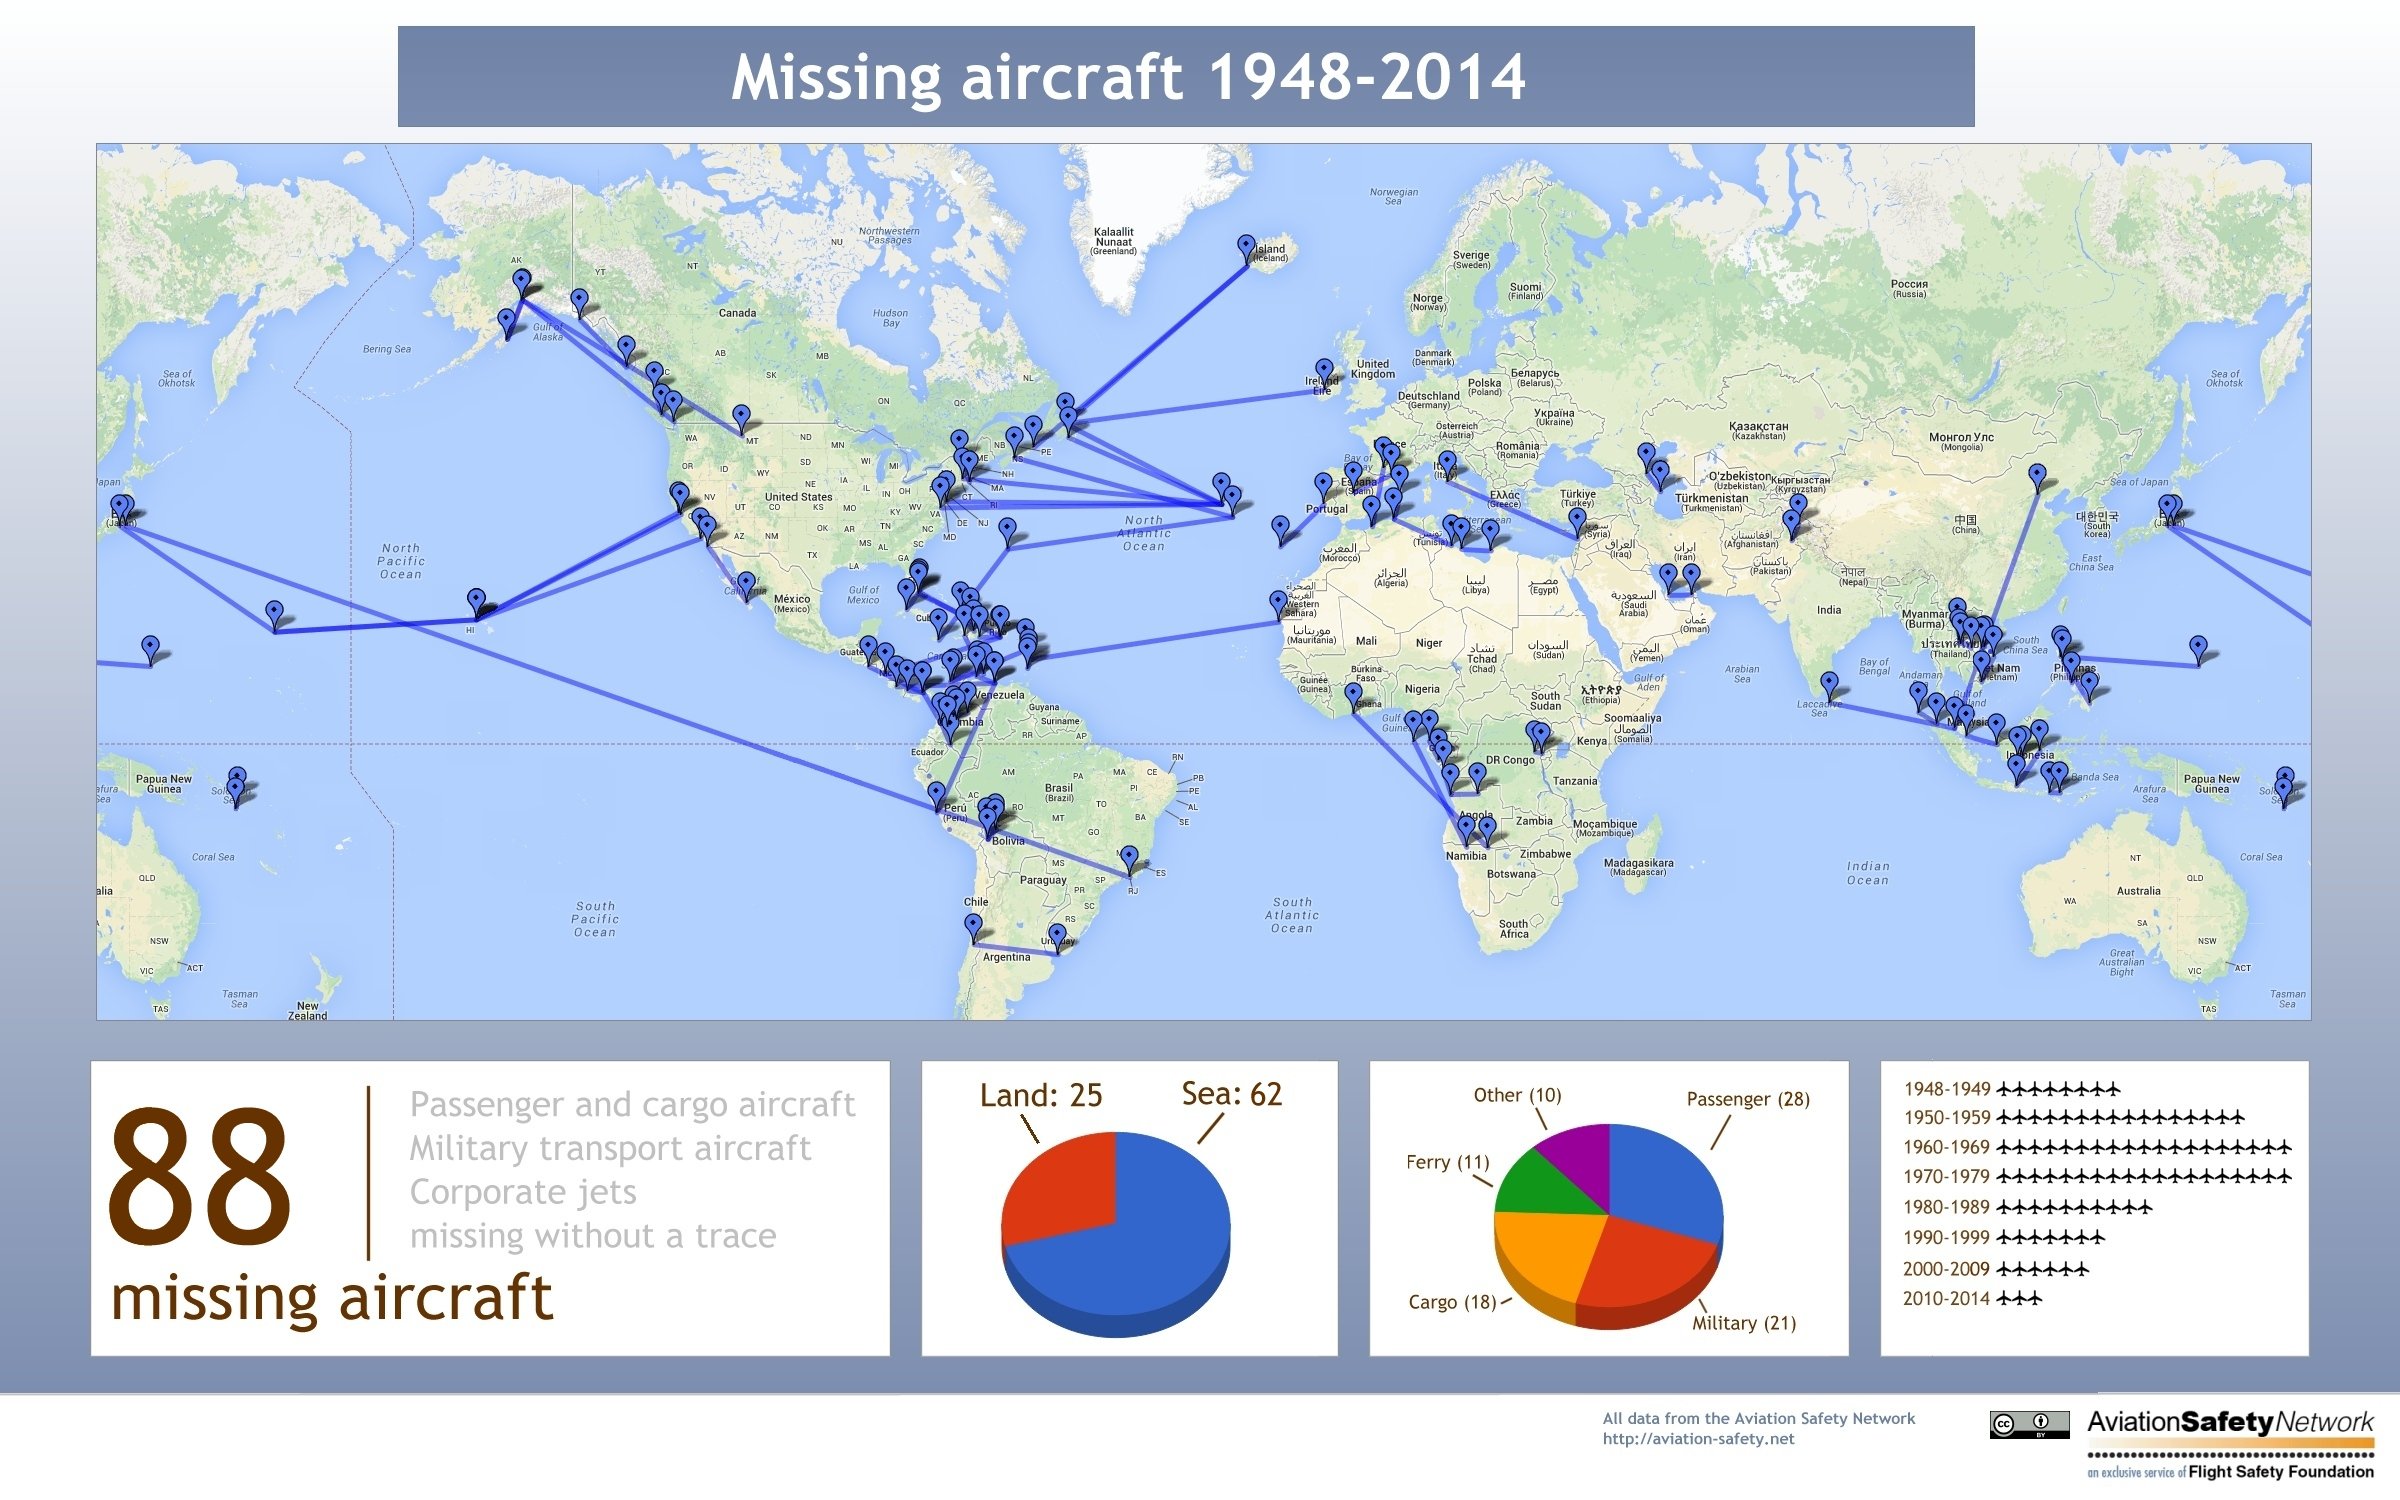 Nach den Unterlagen des Aviation Safety Network sind seit 1948 mindestens 88 Passagier-, Firmen-, Fracht- und Militärflugzeuge verschollen. In zwei Drittel der Fälle verschwanden die Maschinen über dem Meer. 